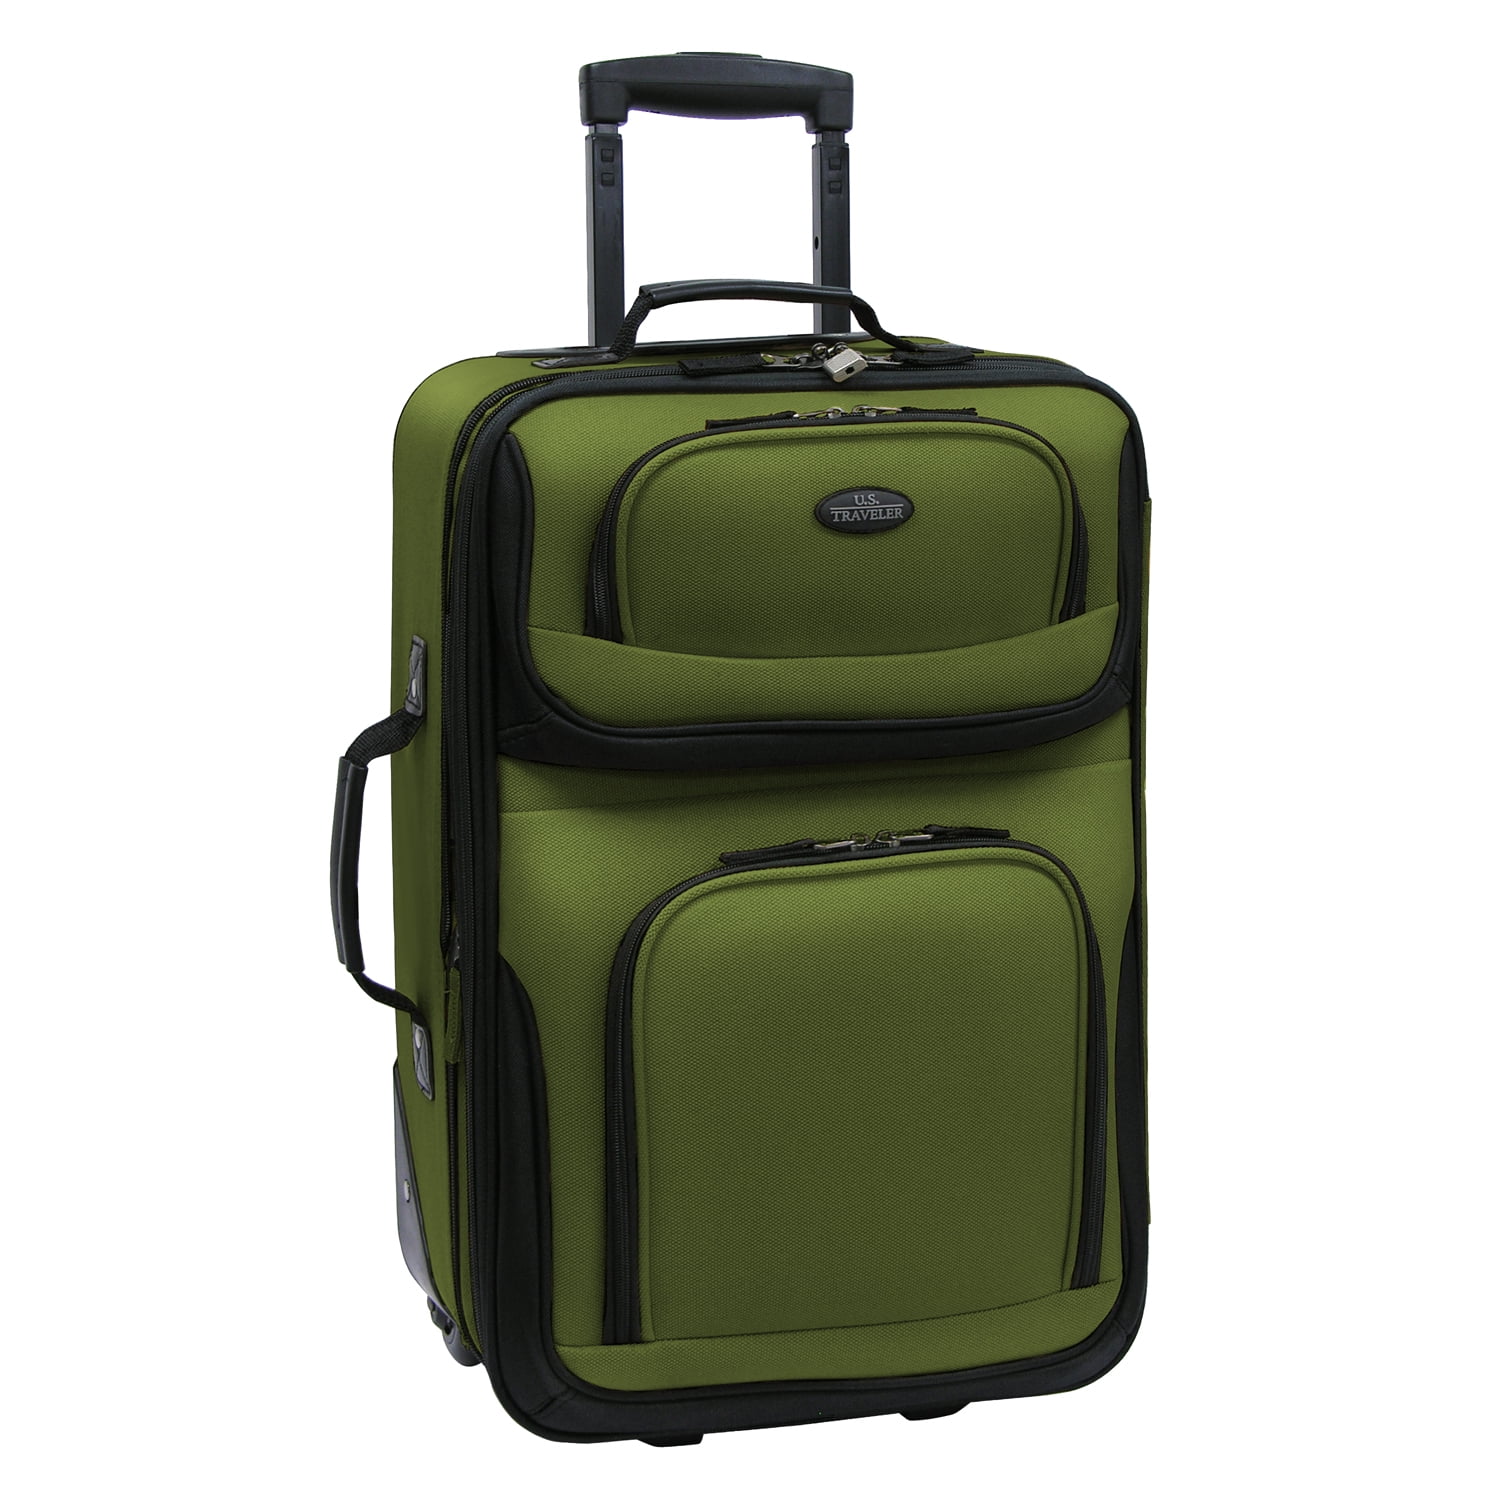 Somago Luggage Sets 3 Piece Spinner Hardside PP